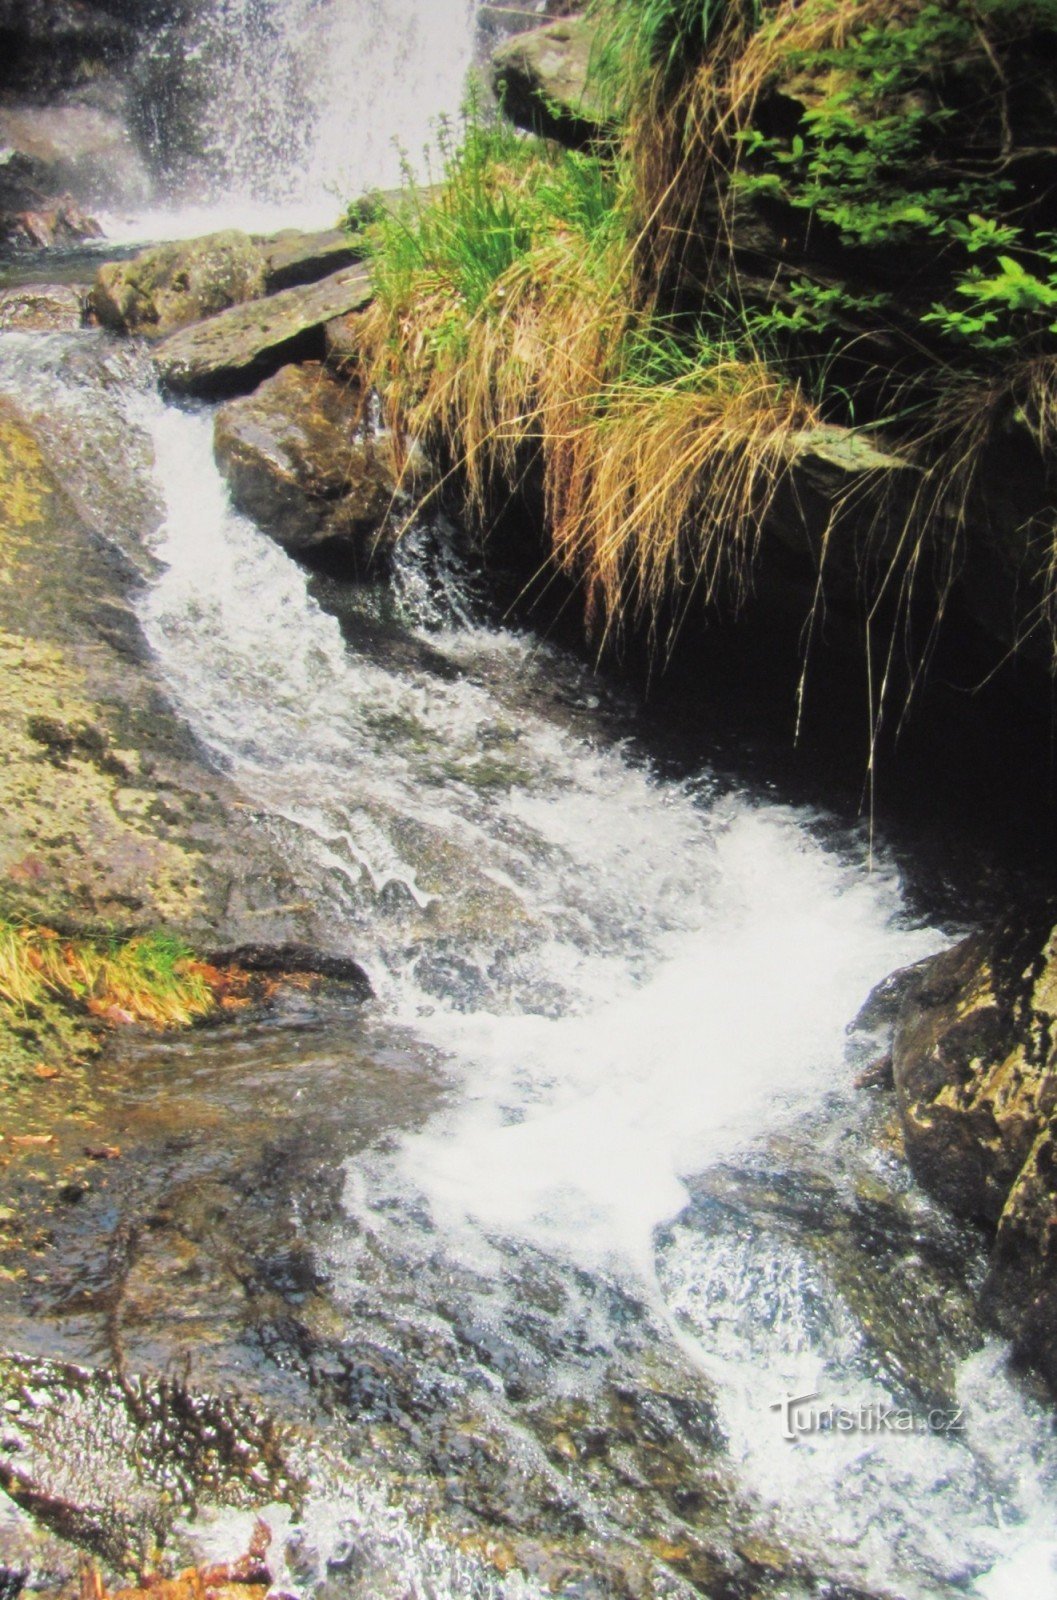 Zu den Wasserfällen auf dem Borový potok